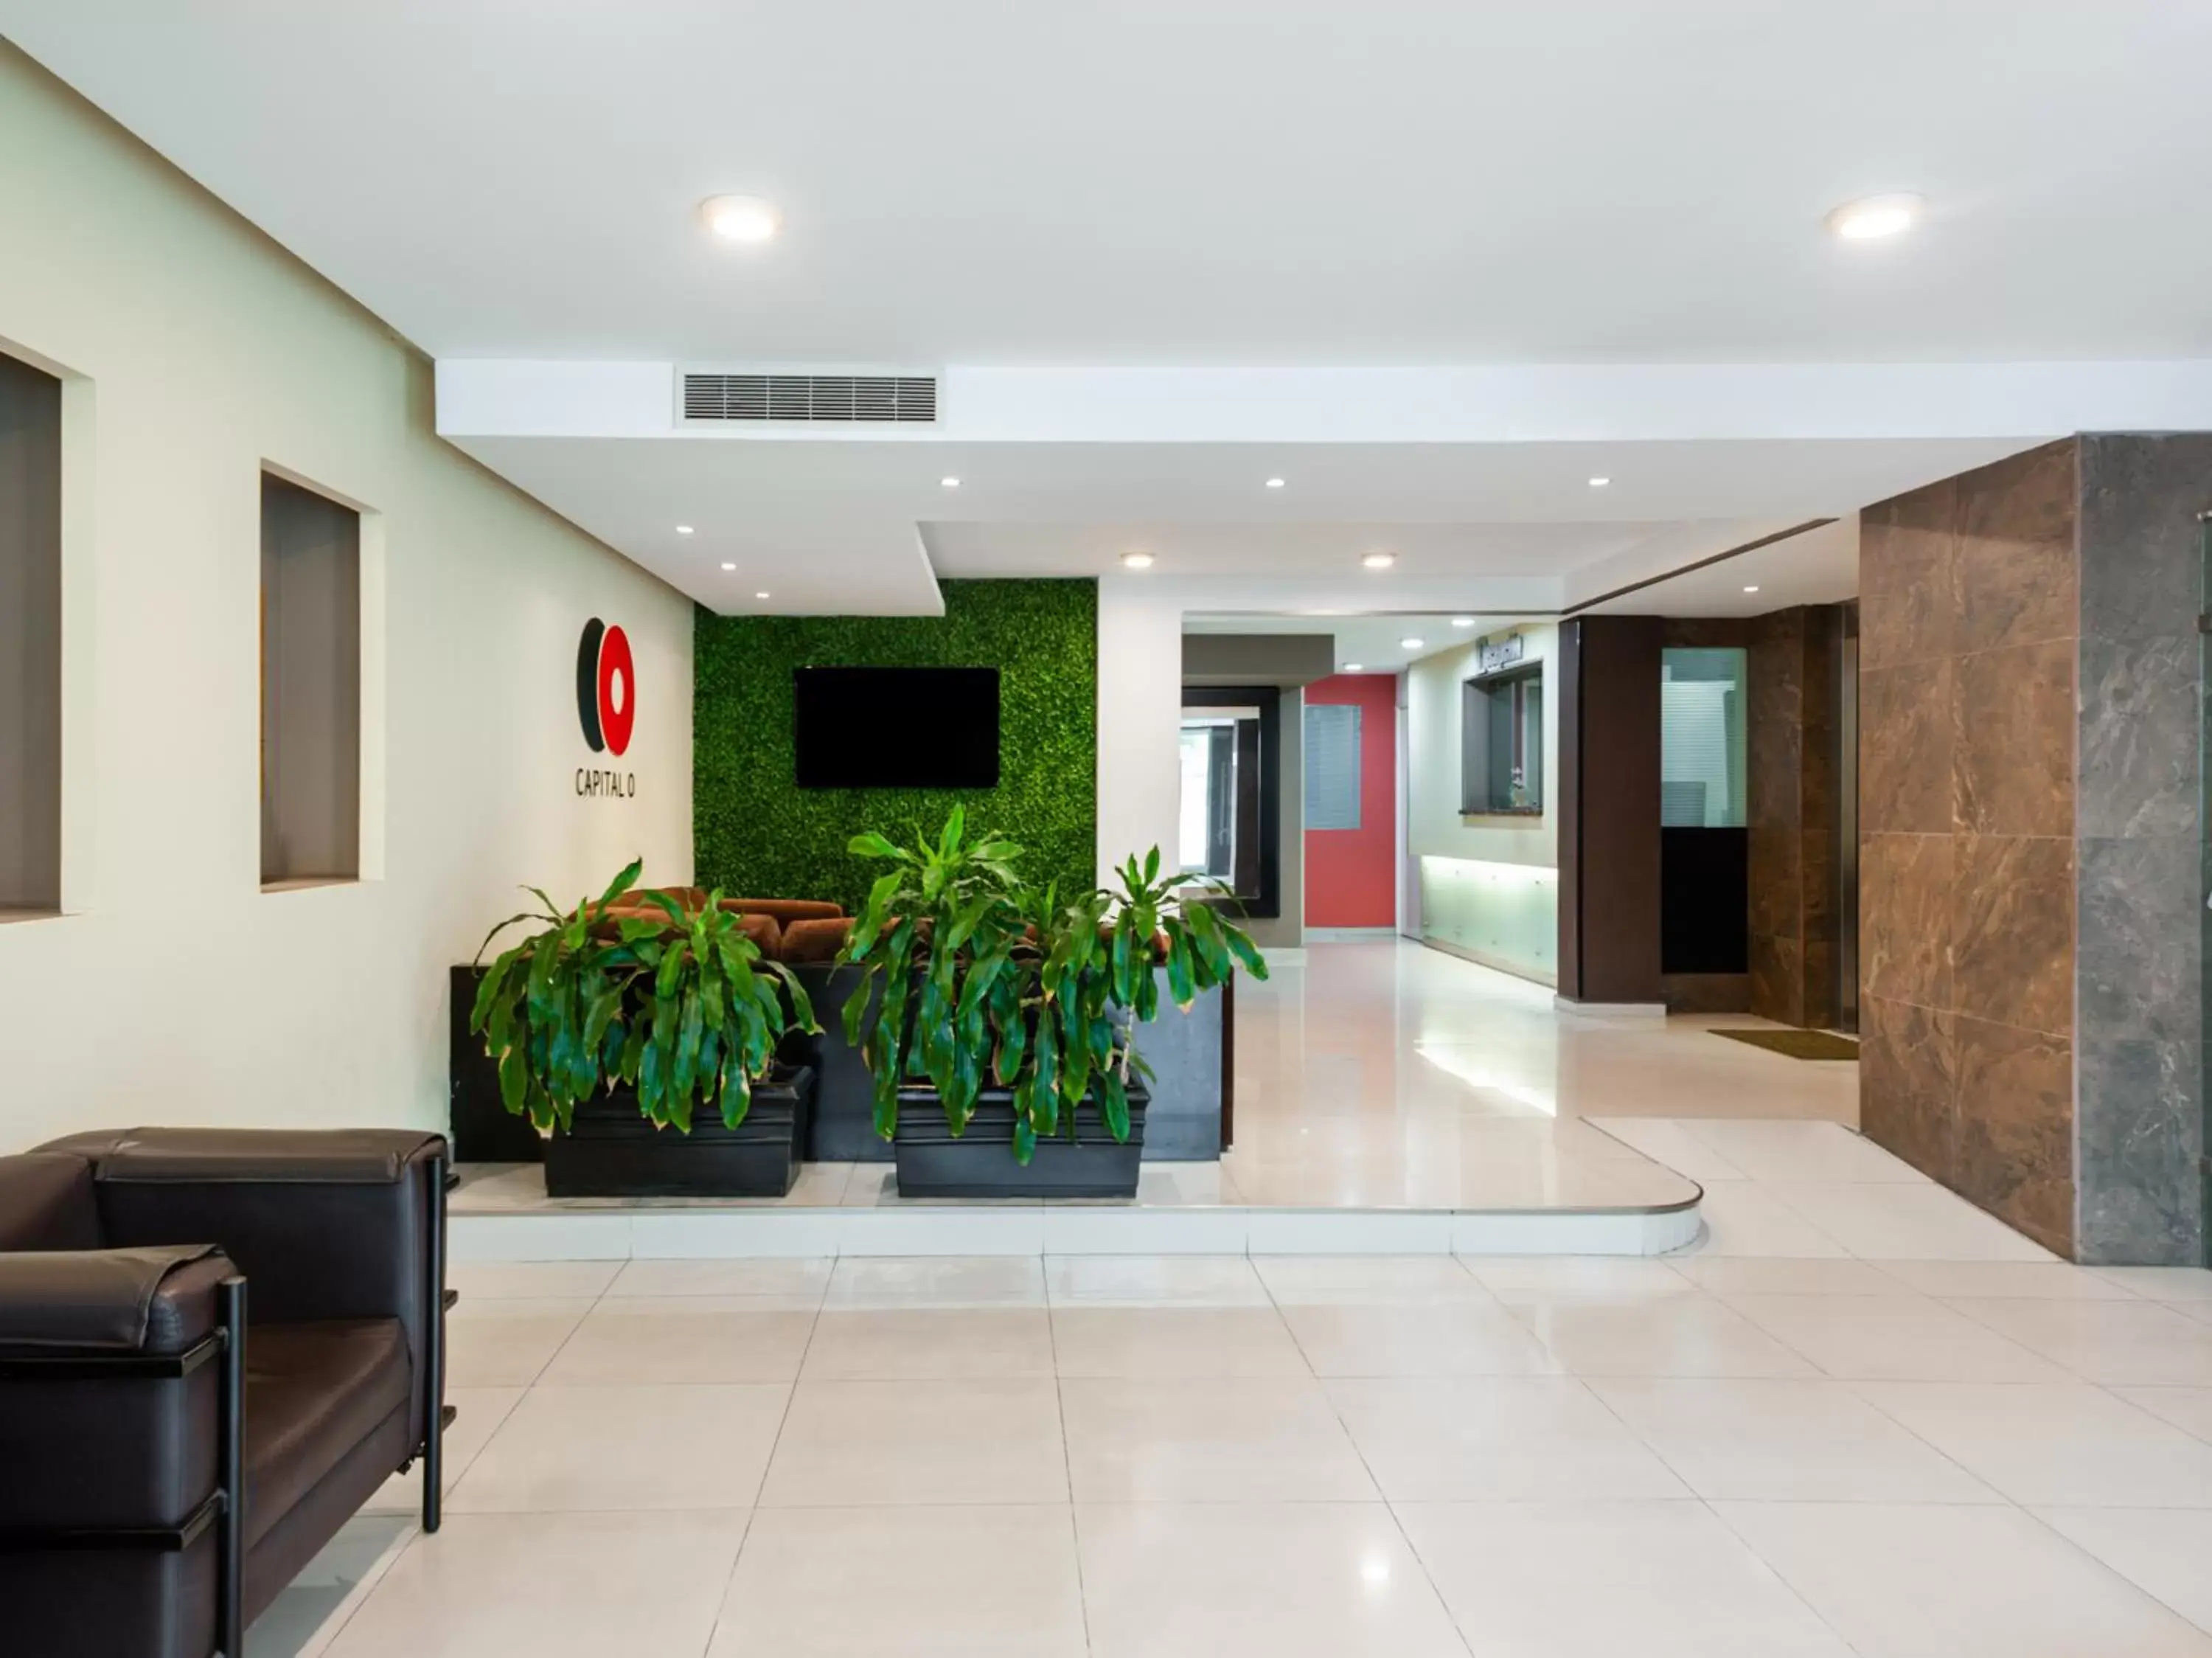 Lobby or reception in Veracruz Suites Hotel